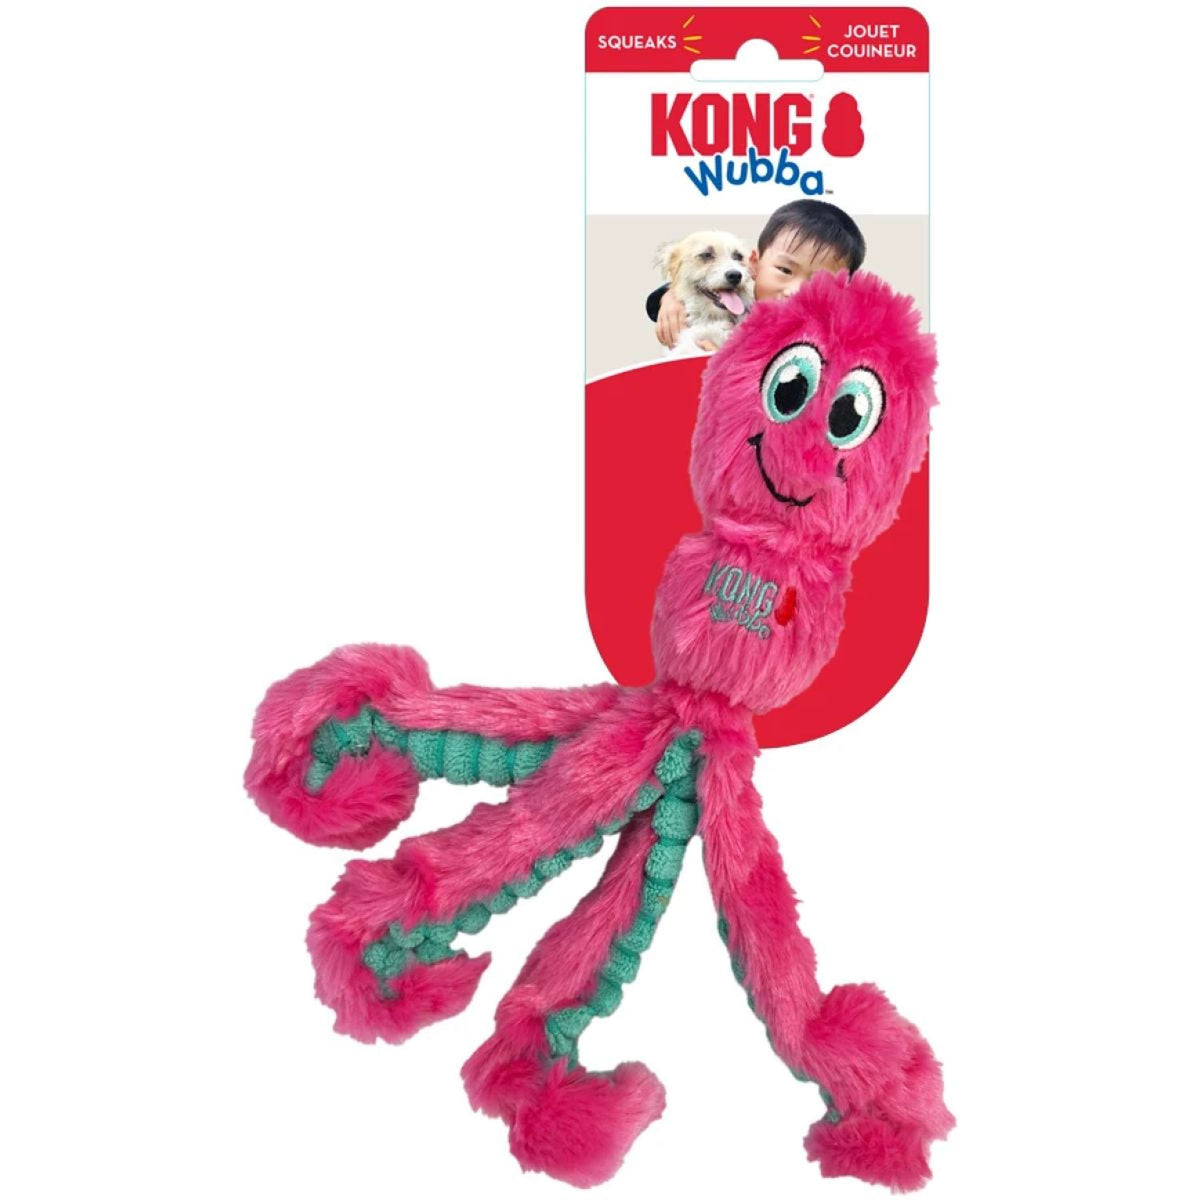 KONG Doudou Octopus